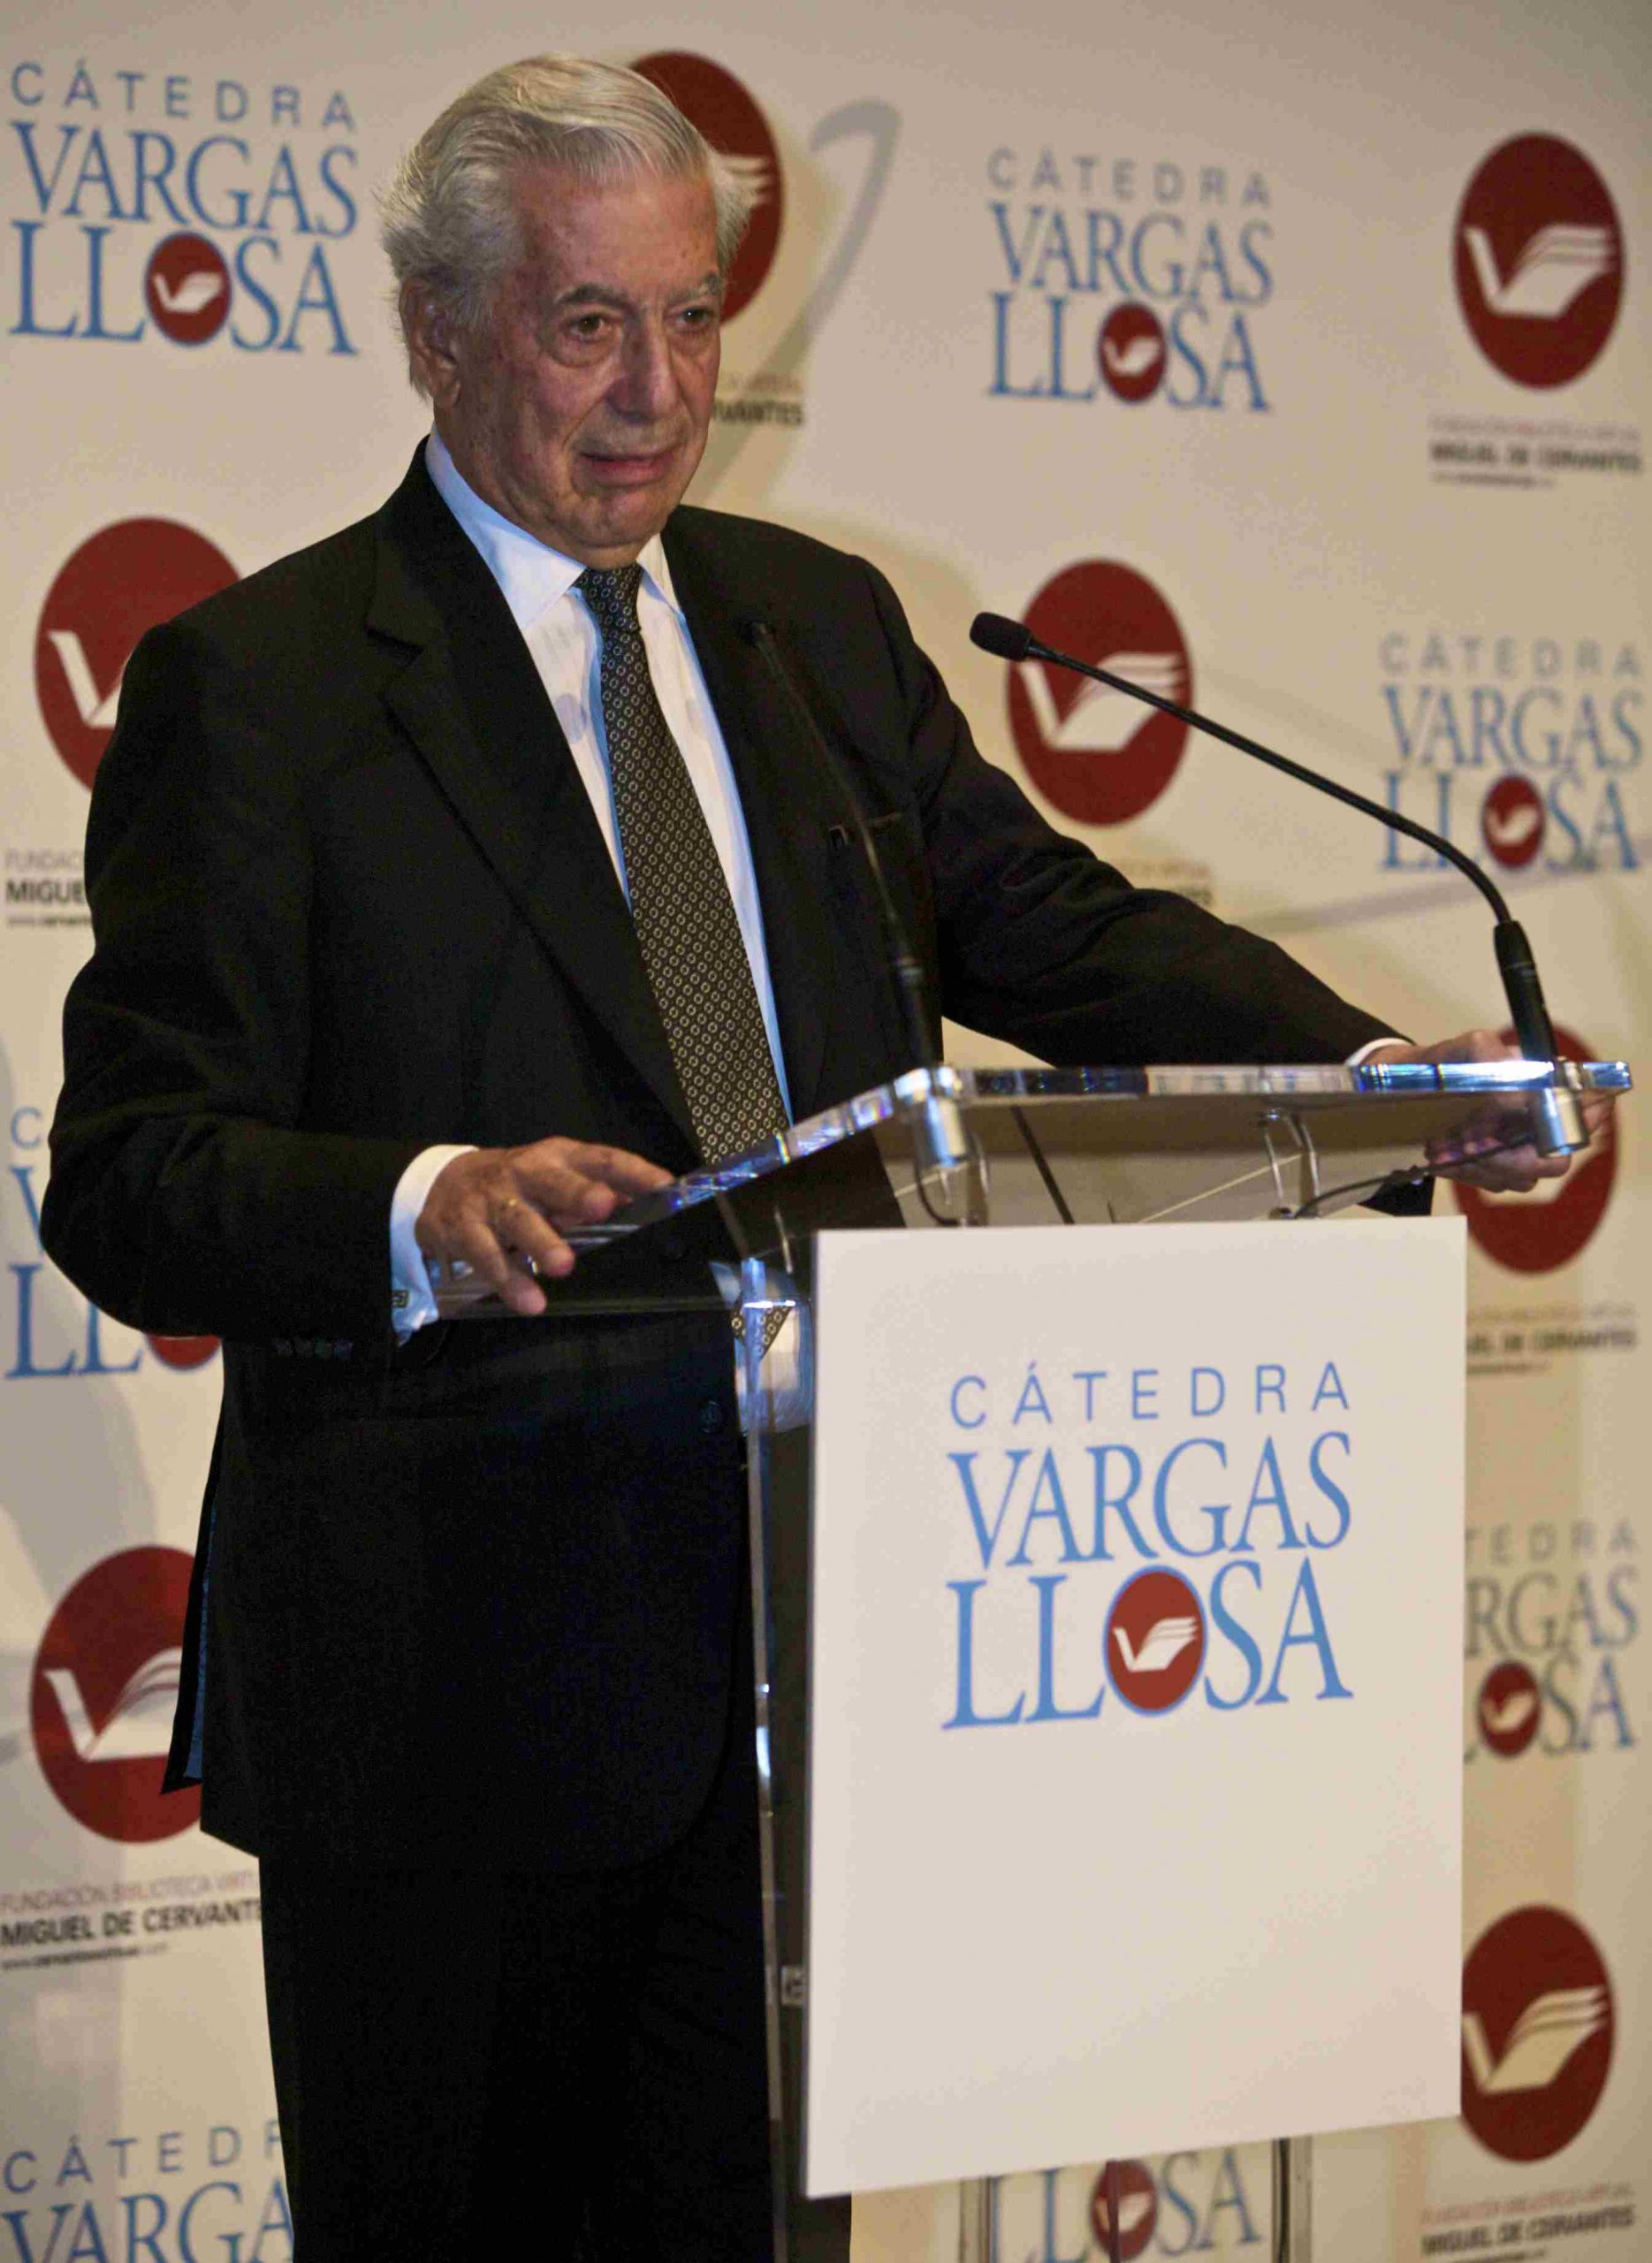 Elias chatbot Mario Vargas Llosa